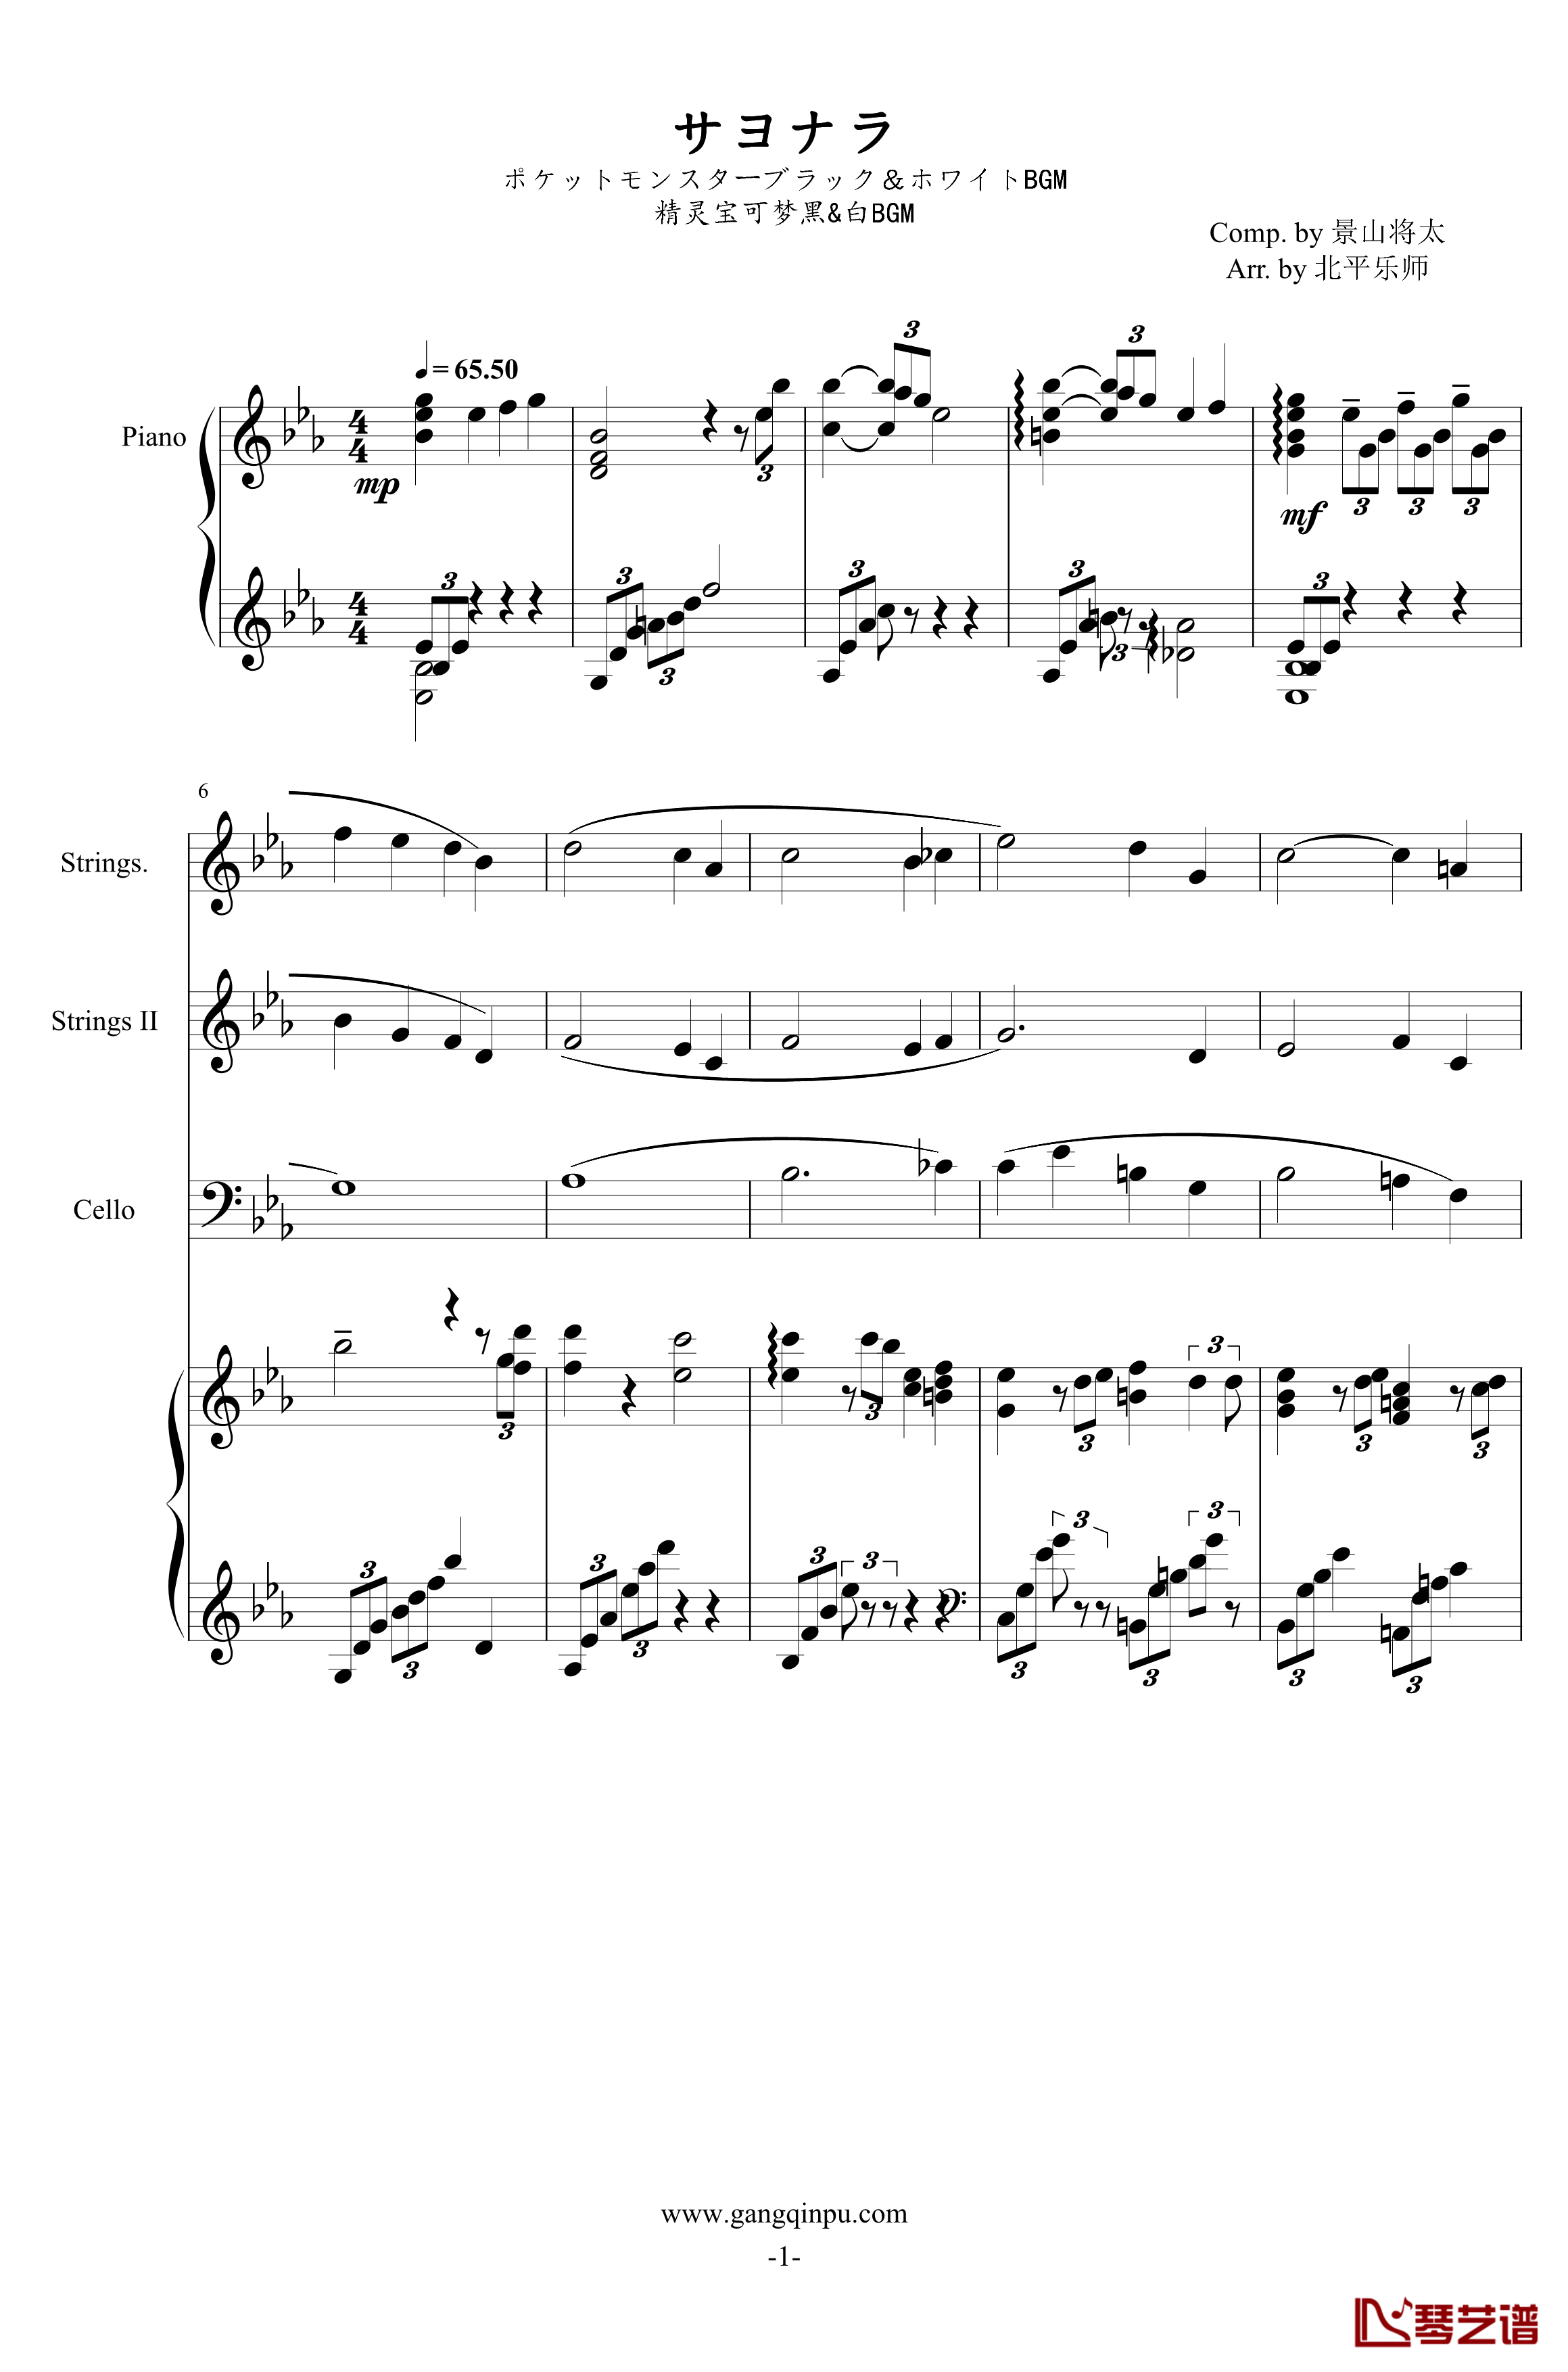 サヨナラ钢琴谱-黑/白BGM-精灵宝可梦